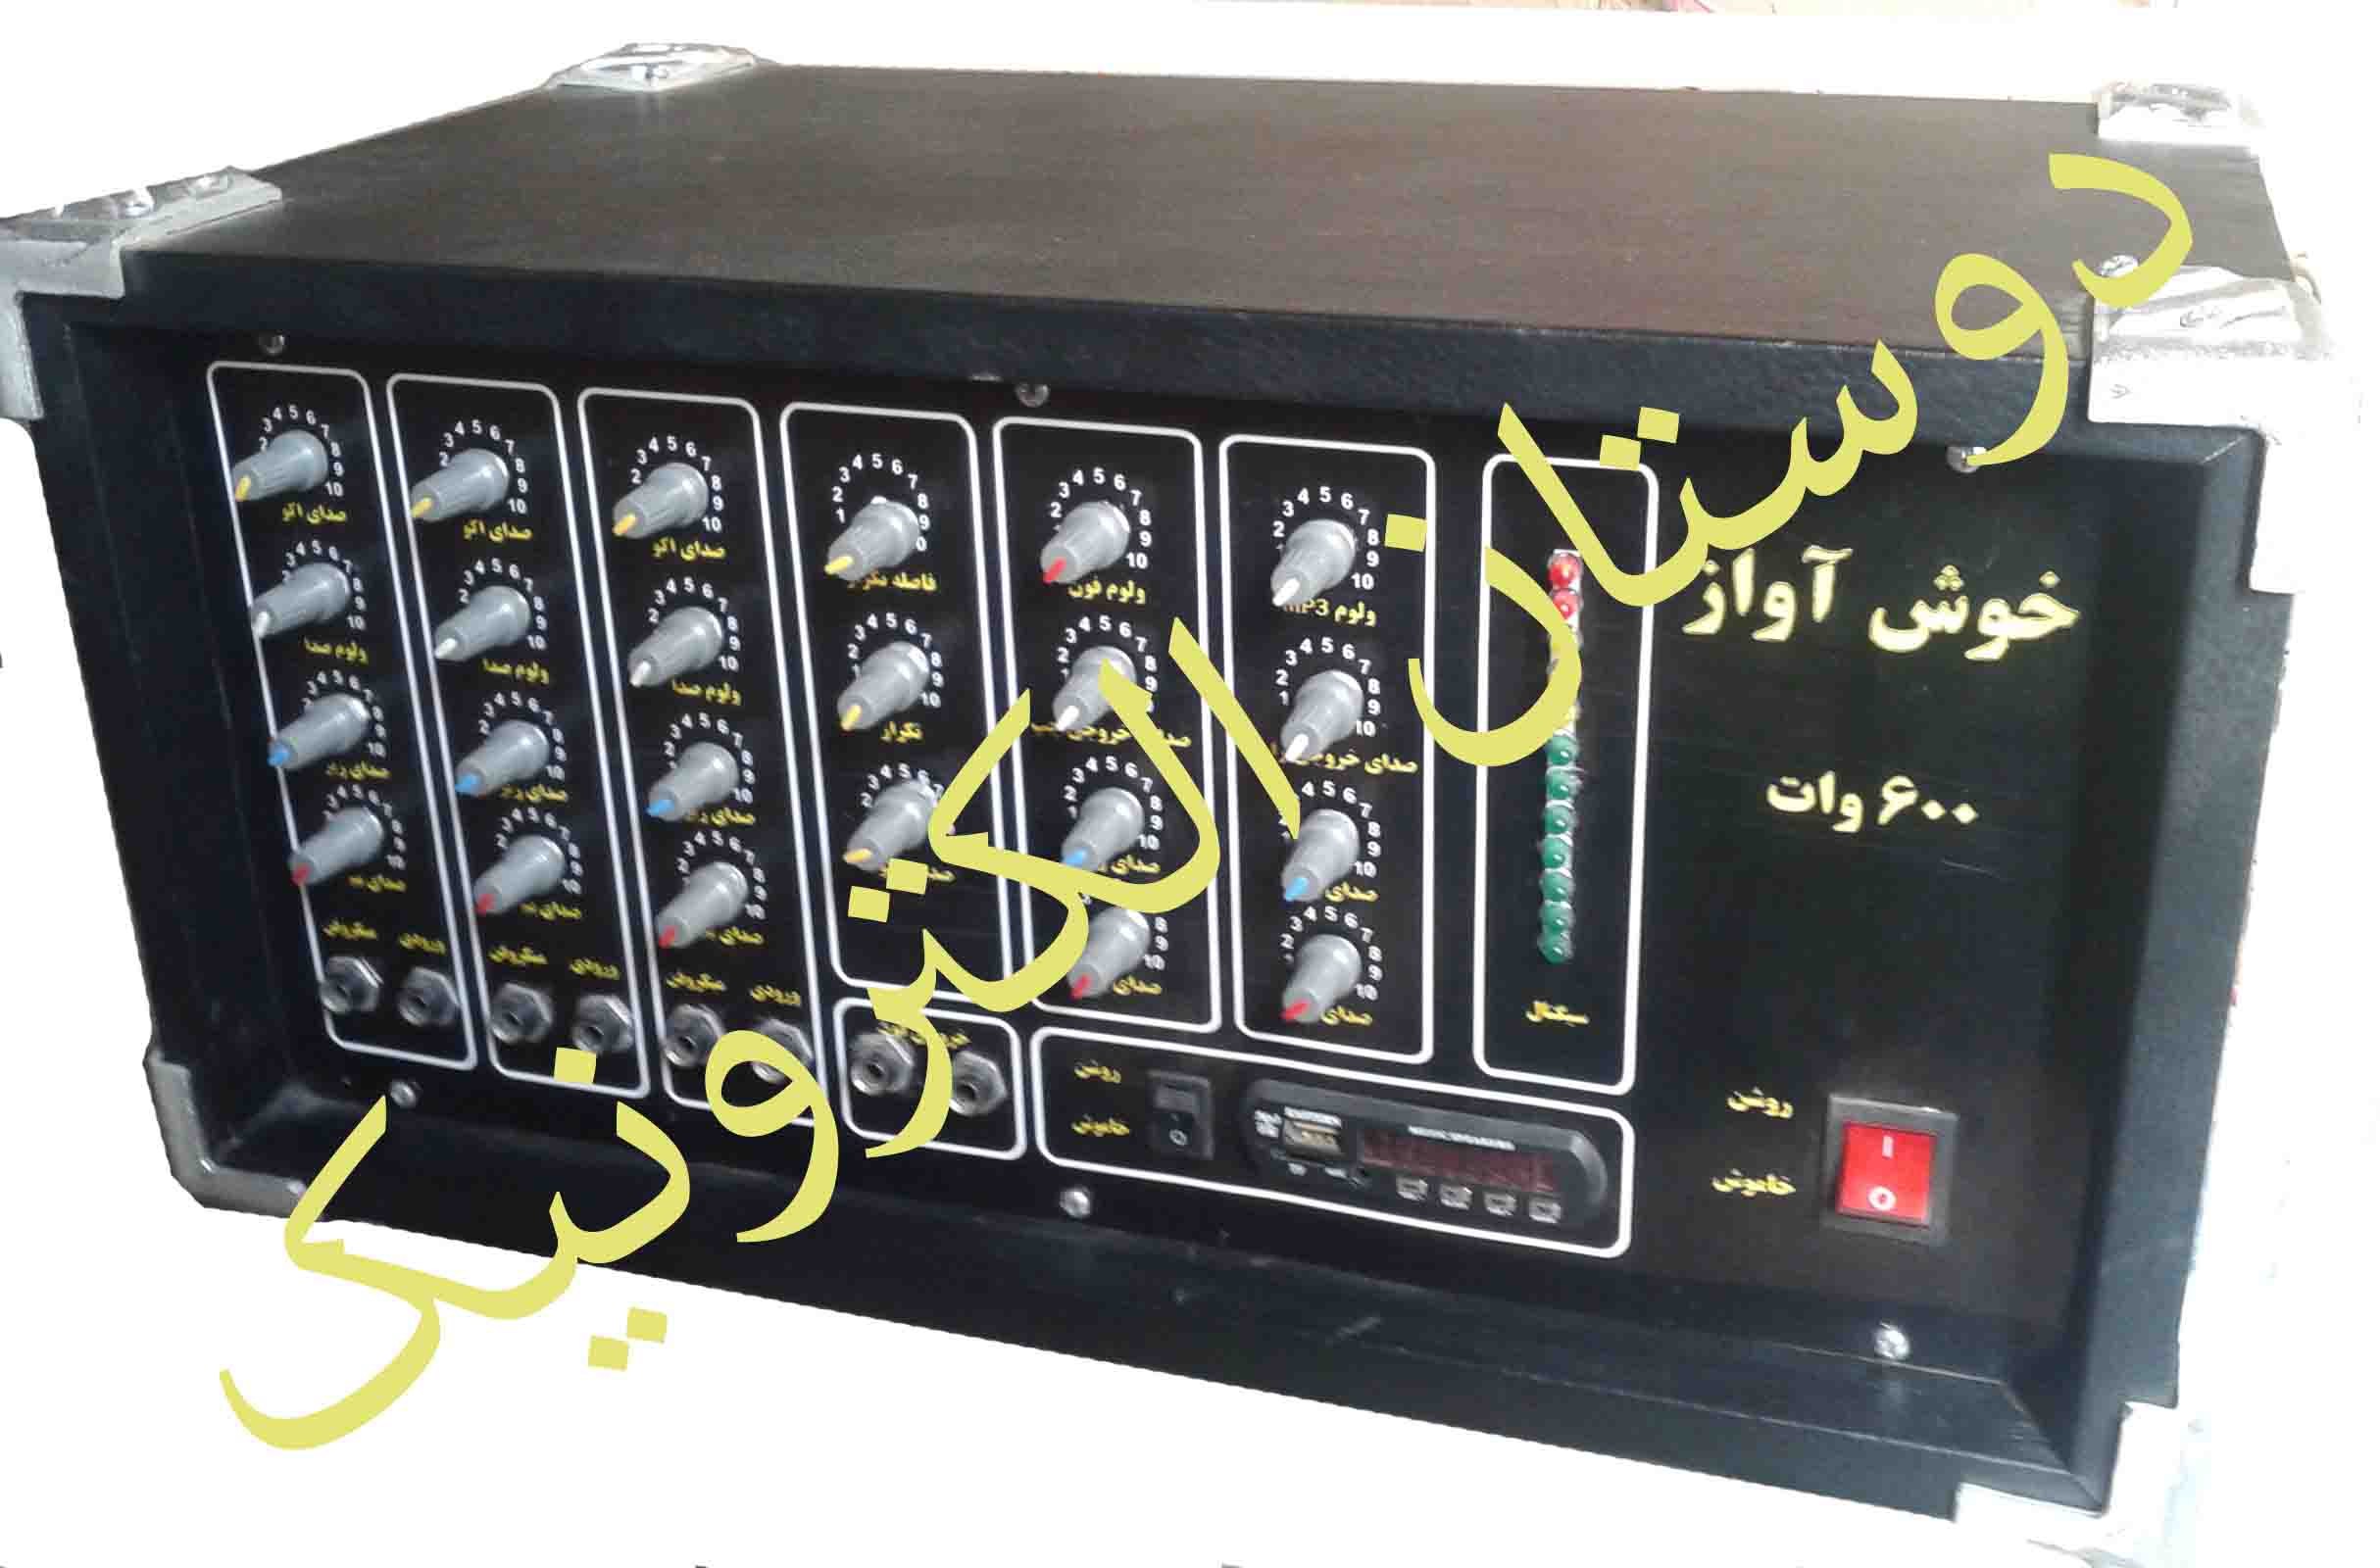 اولین تولیدکننده دستگاههای آمپلی فایر و اکو میکسر در افغانستان